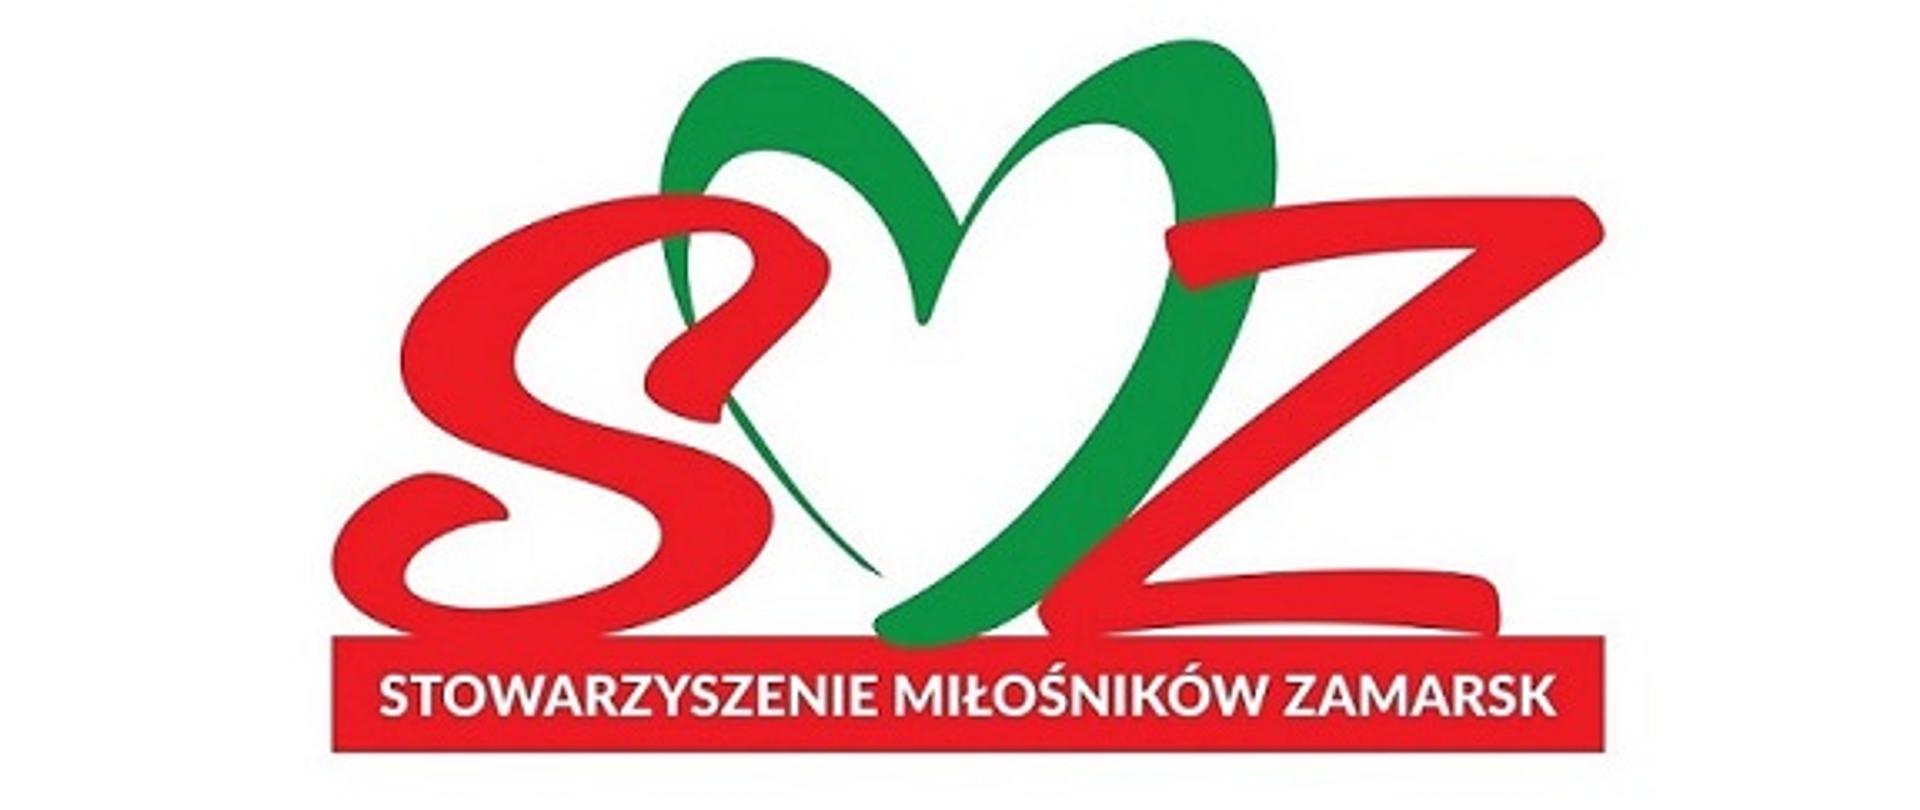 Logo stowarzyszenia: czerwone litery S, Z, w środku pomiędzy nimi zielona litera M w kształcie serca. Pod nimi biały napis na czerwonym tle: Stowarzyszenie Miłośników Zamarsk.